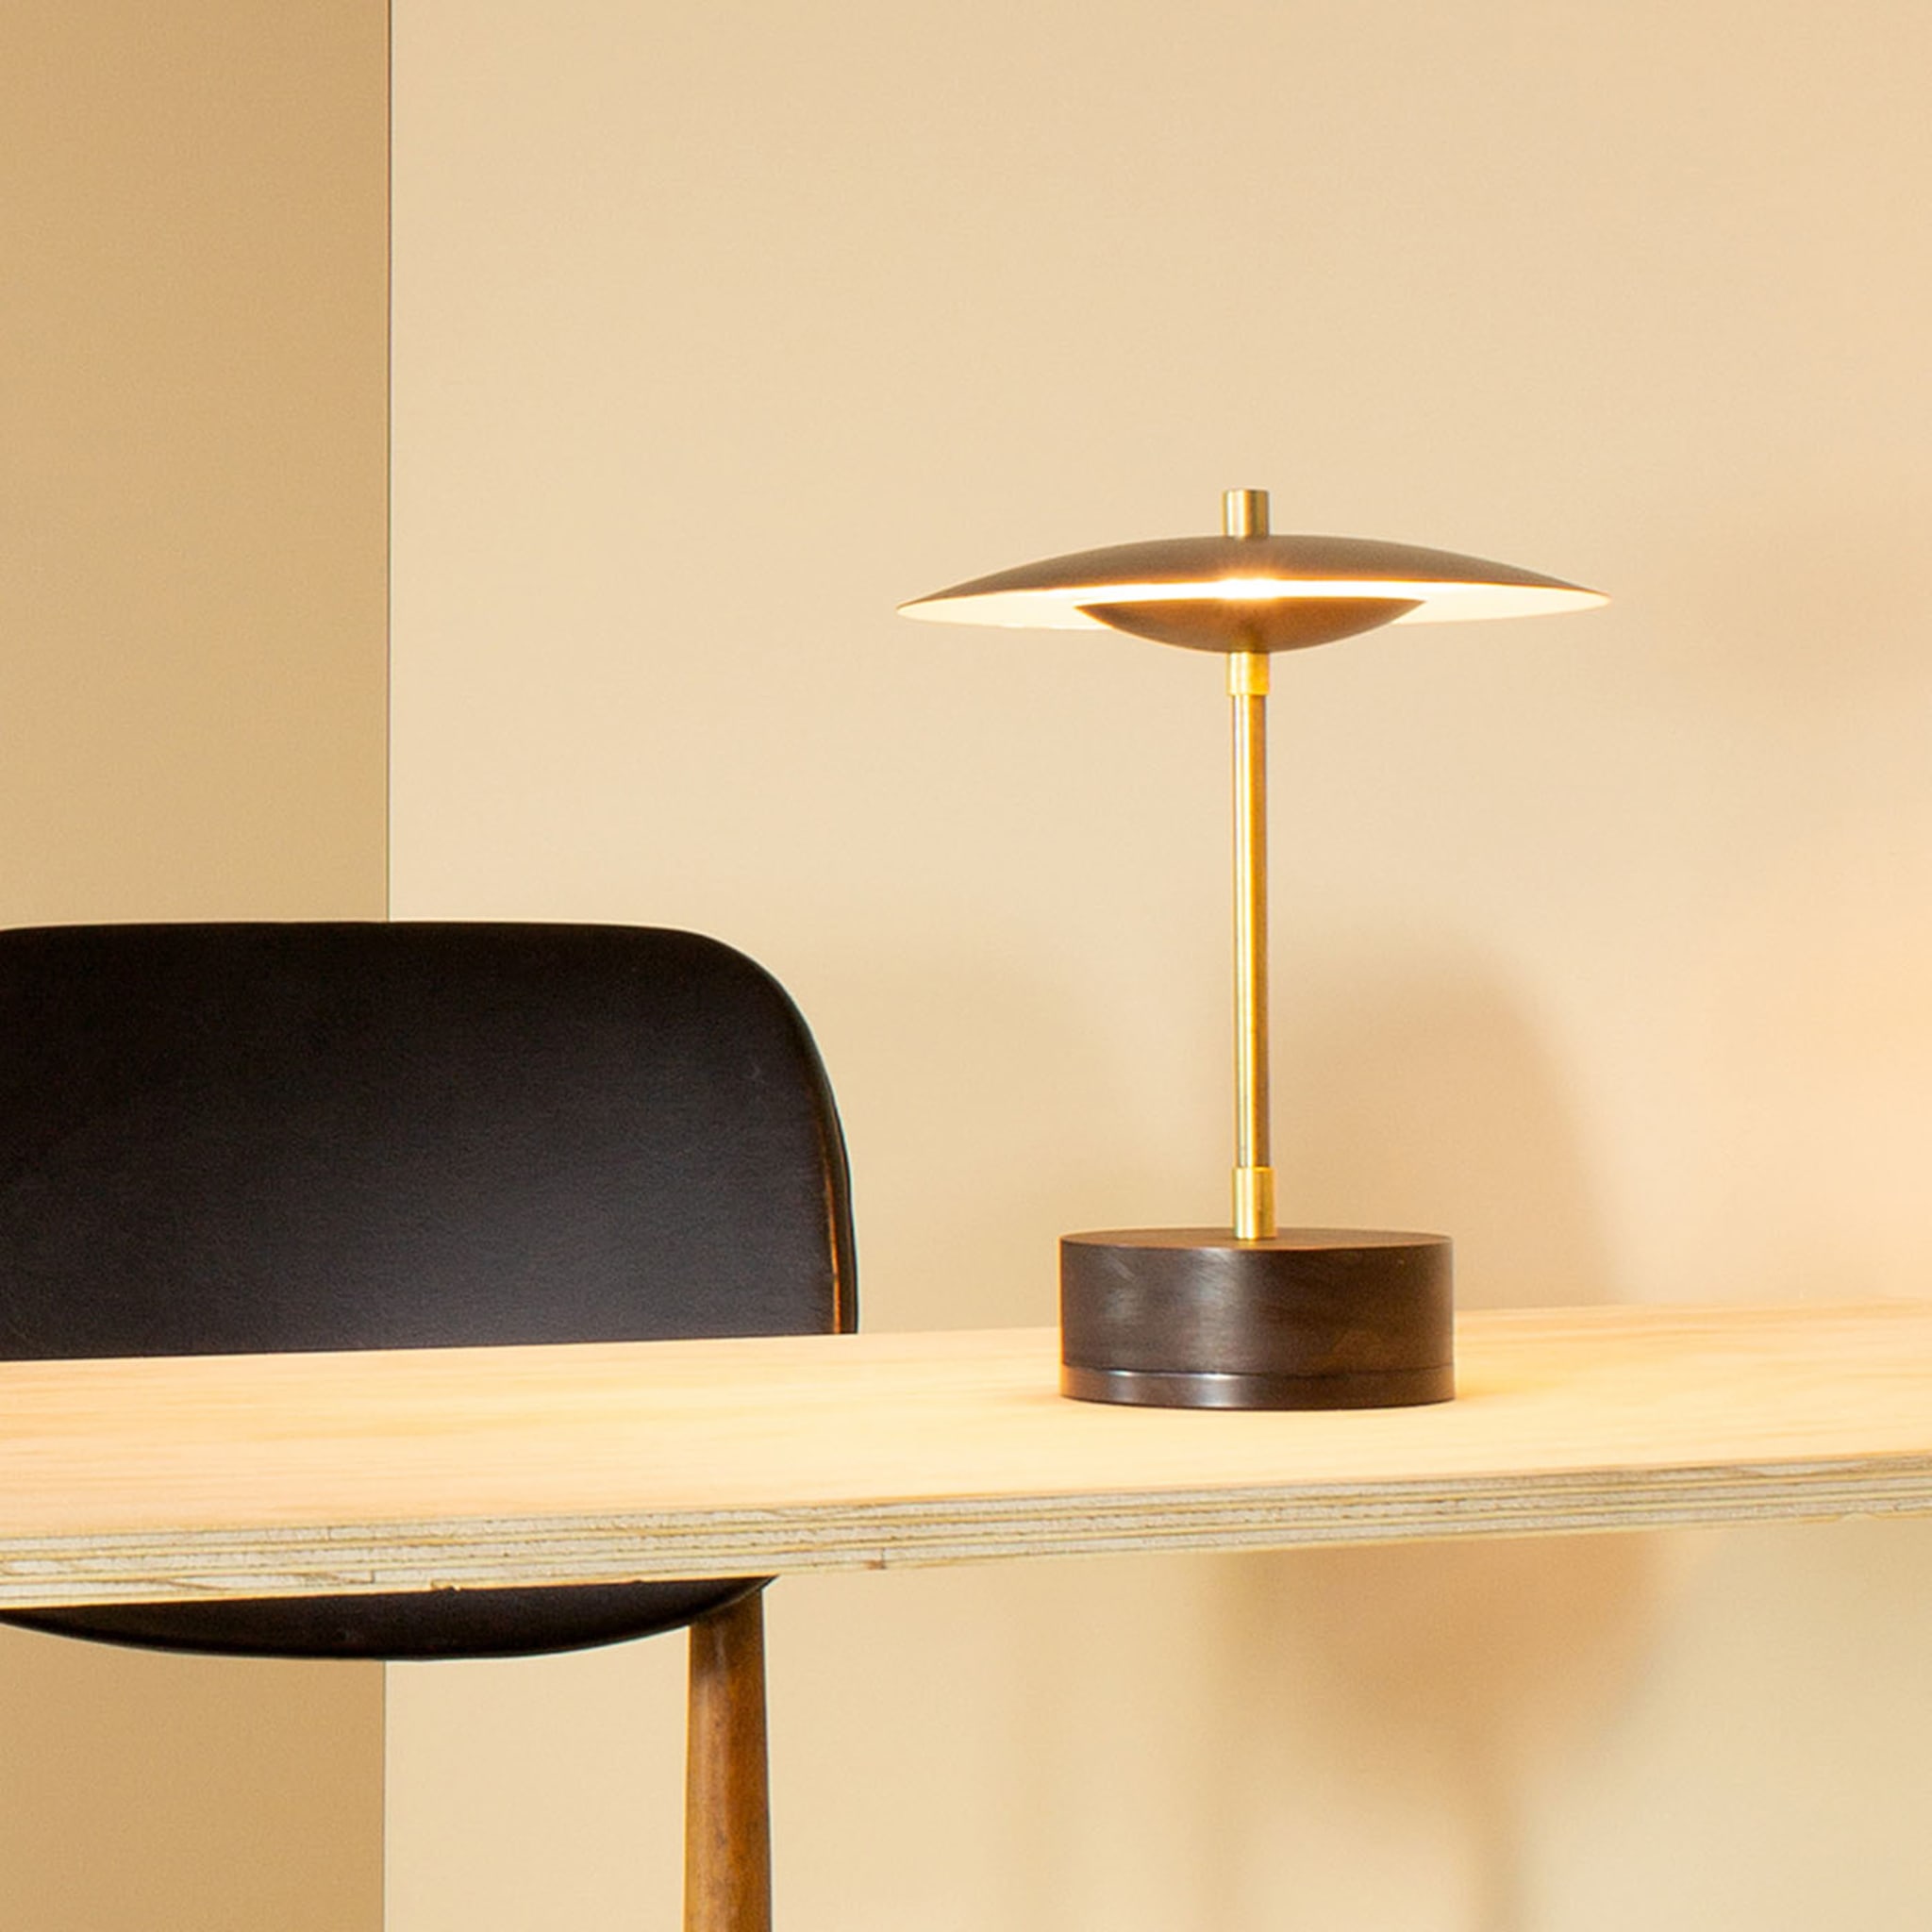 Piattino Table Lamp - Alternative view 1